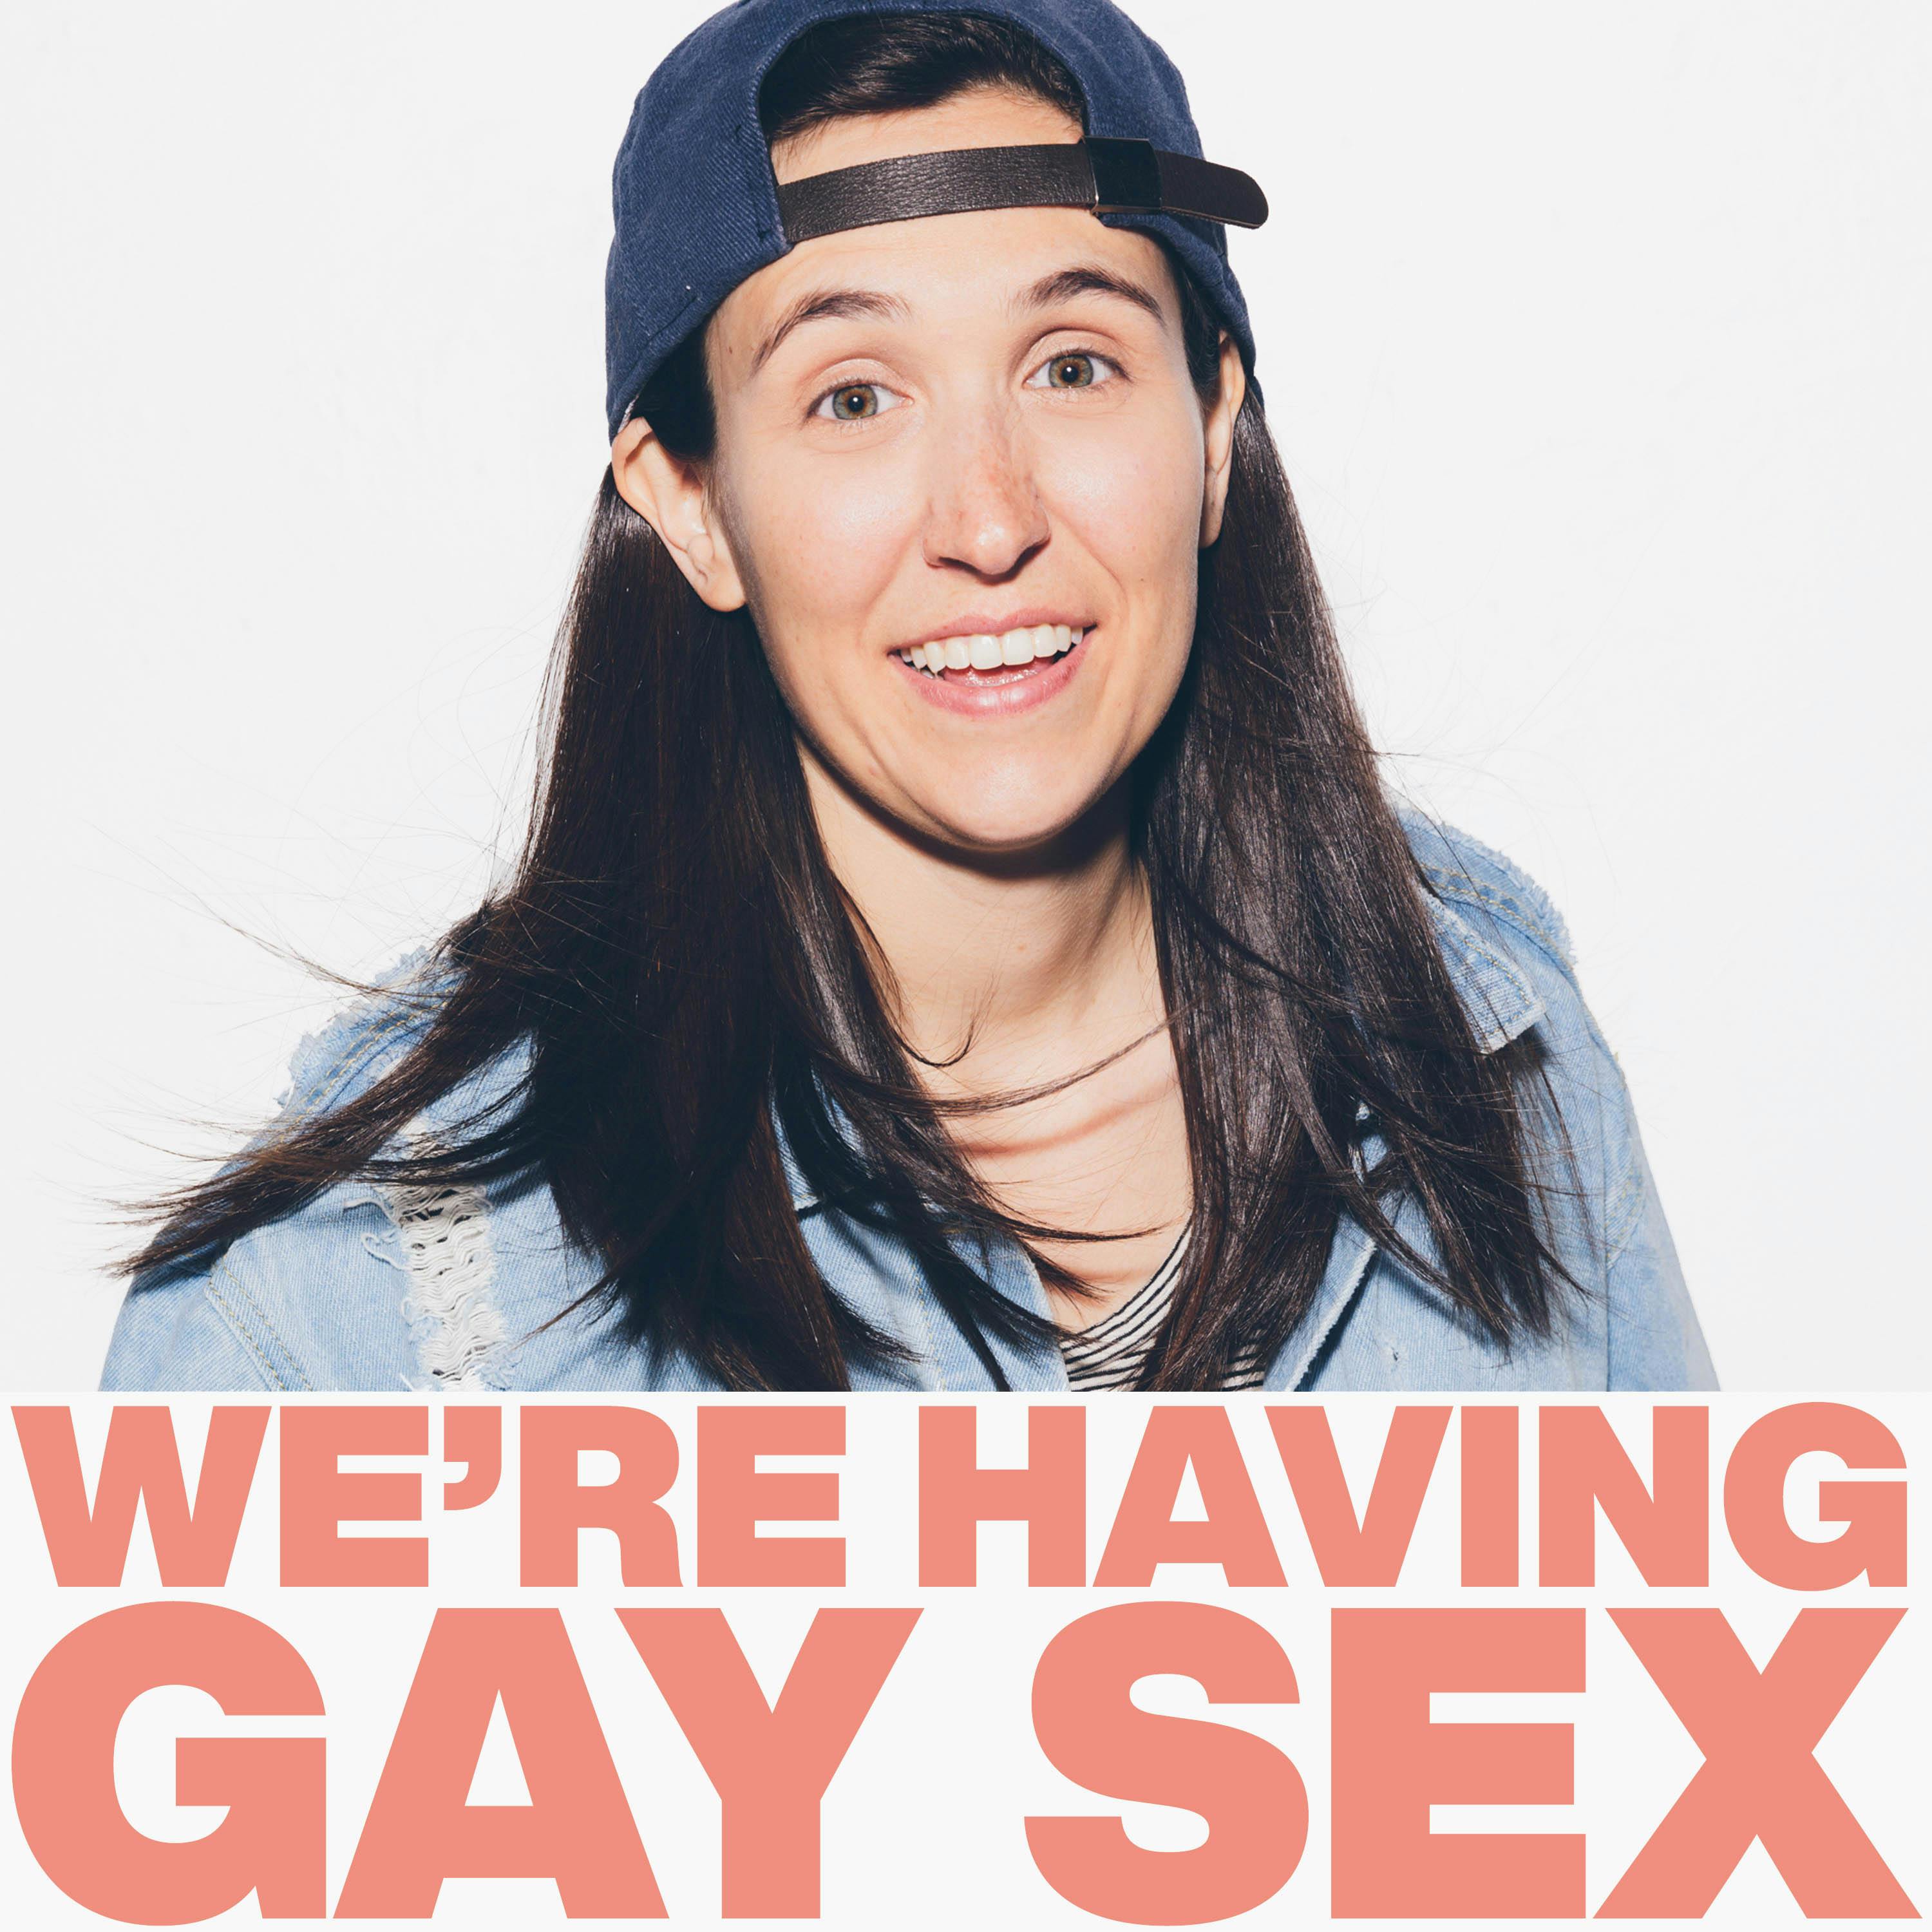 We're Having Gay Sex - Jake Cornell Breaks Teeth and Big News